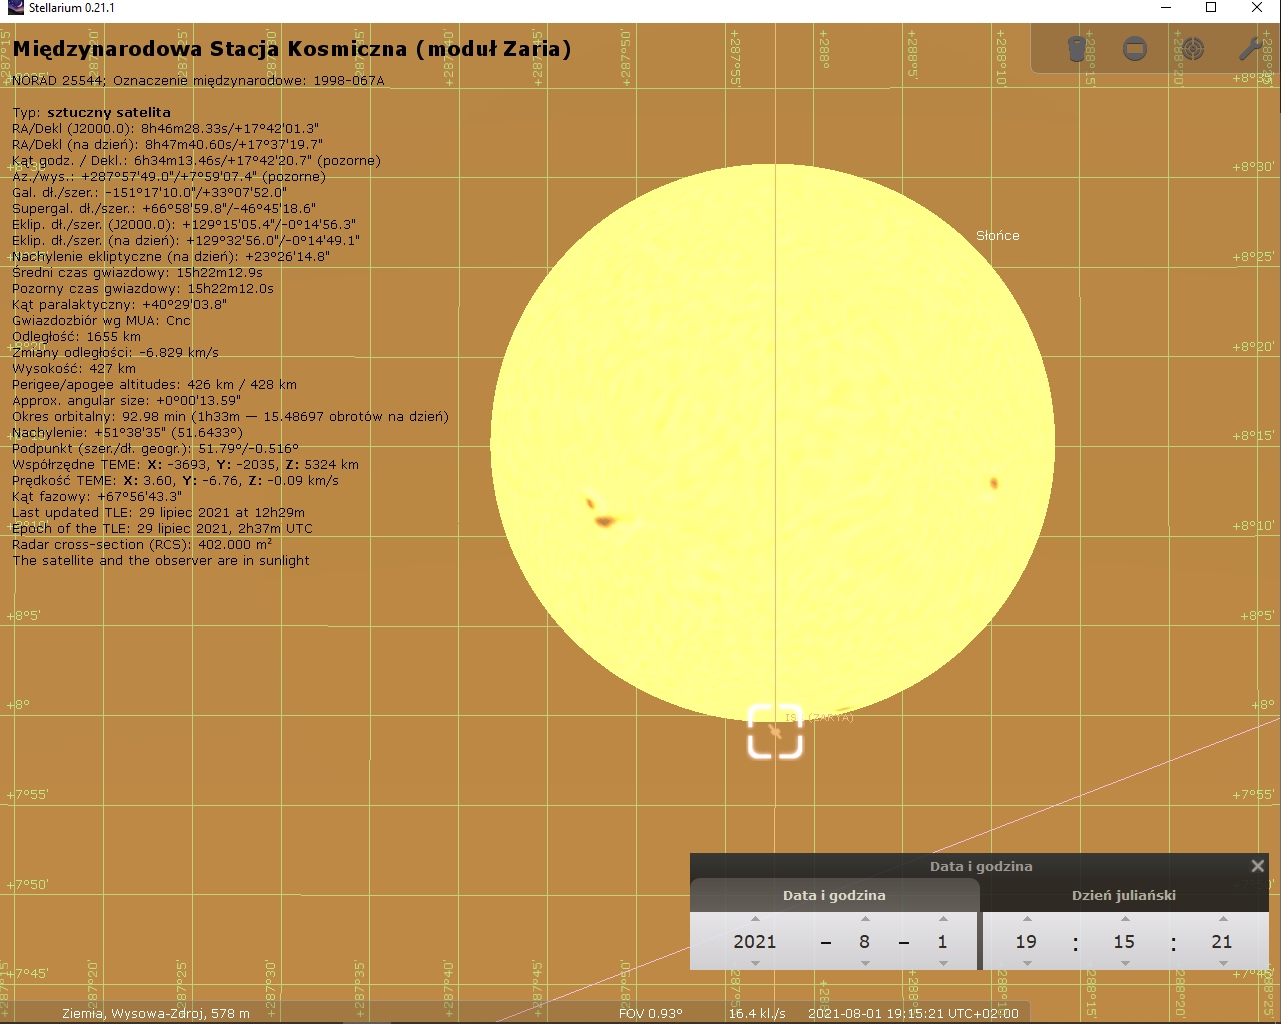 ISS-Sun_1-08-2021_Wysowa-Zdroj_1.jpg.ccf47354dd792d455acfe579f6dd8d9e.jpg